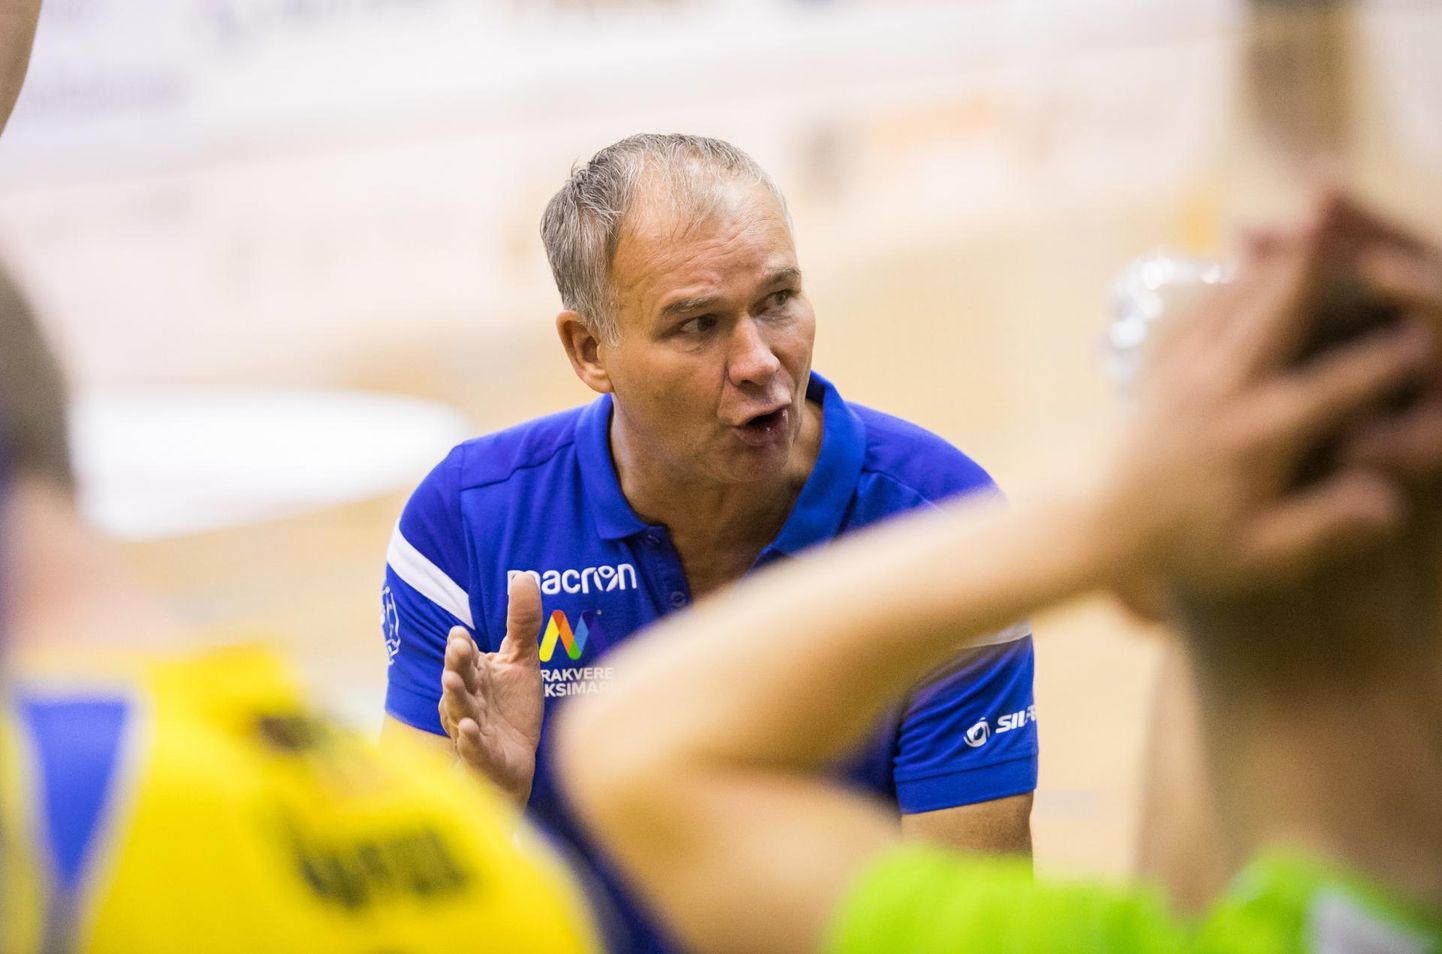 Rakvere Võrkpalliklubi peatreener Andres Toode nentis, et kui tiim mängib samamoodi kui Saaremaal, võib kõike oodata.